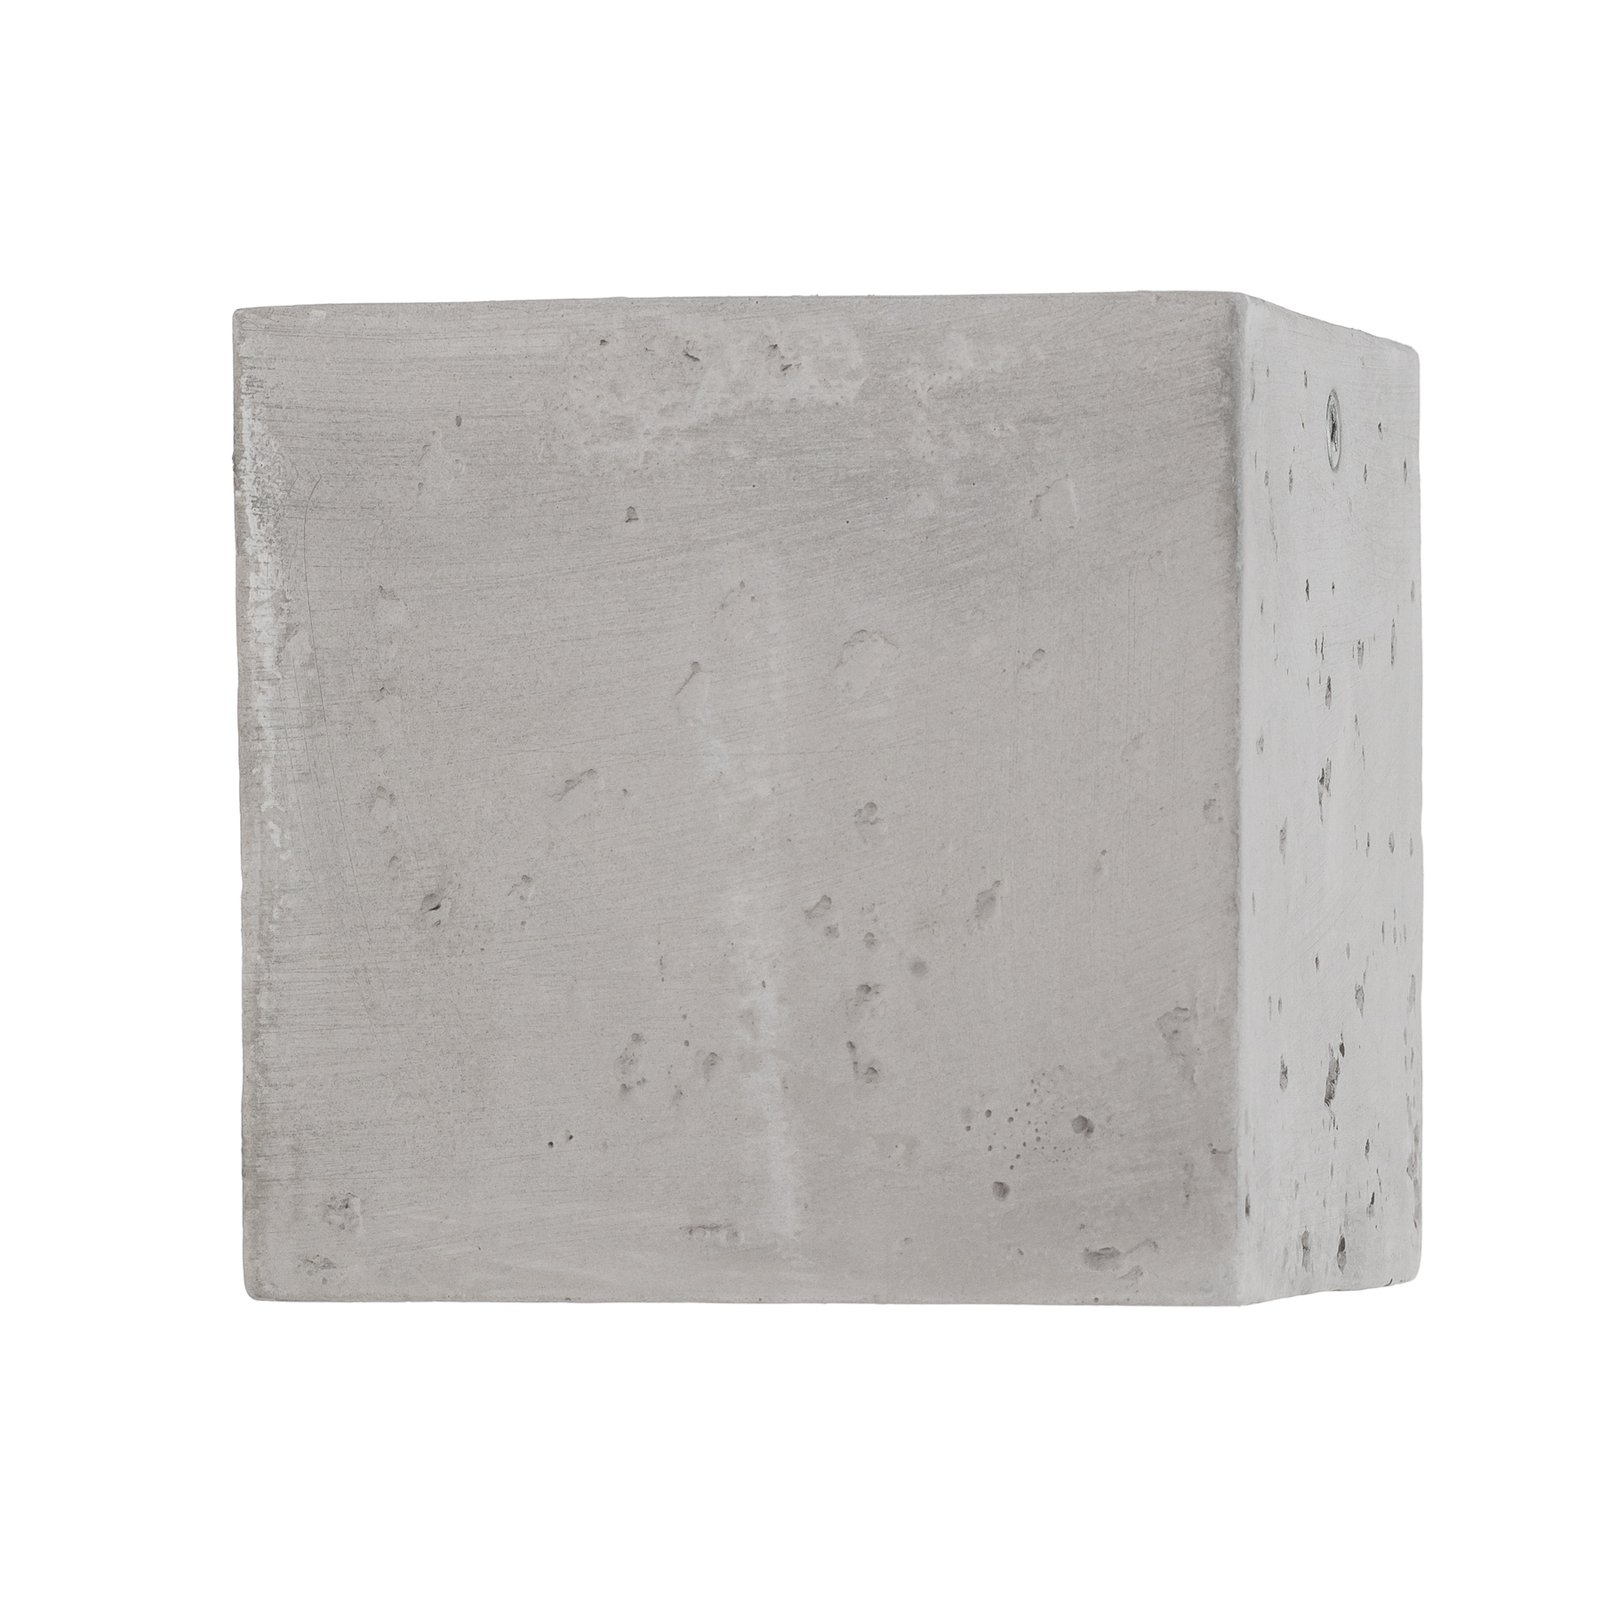 Stropné svetlo Ara ako betónová kocka 10 cm x 10 cm